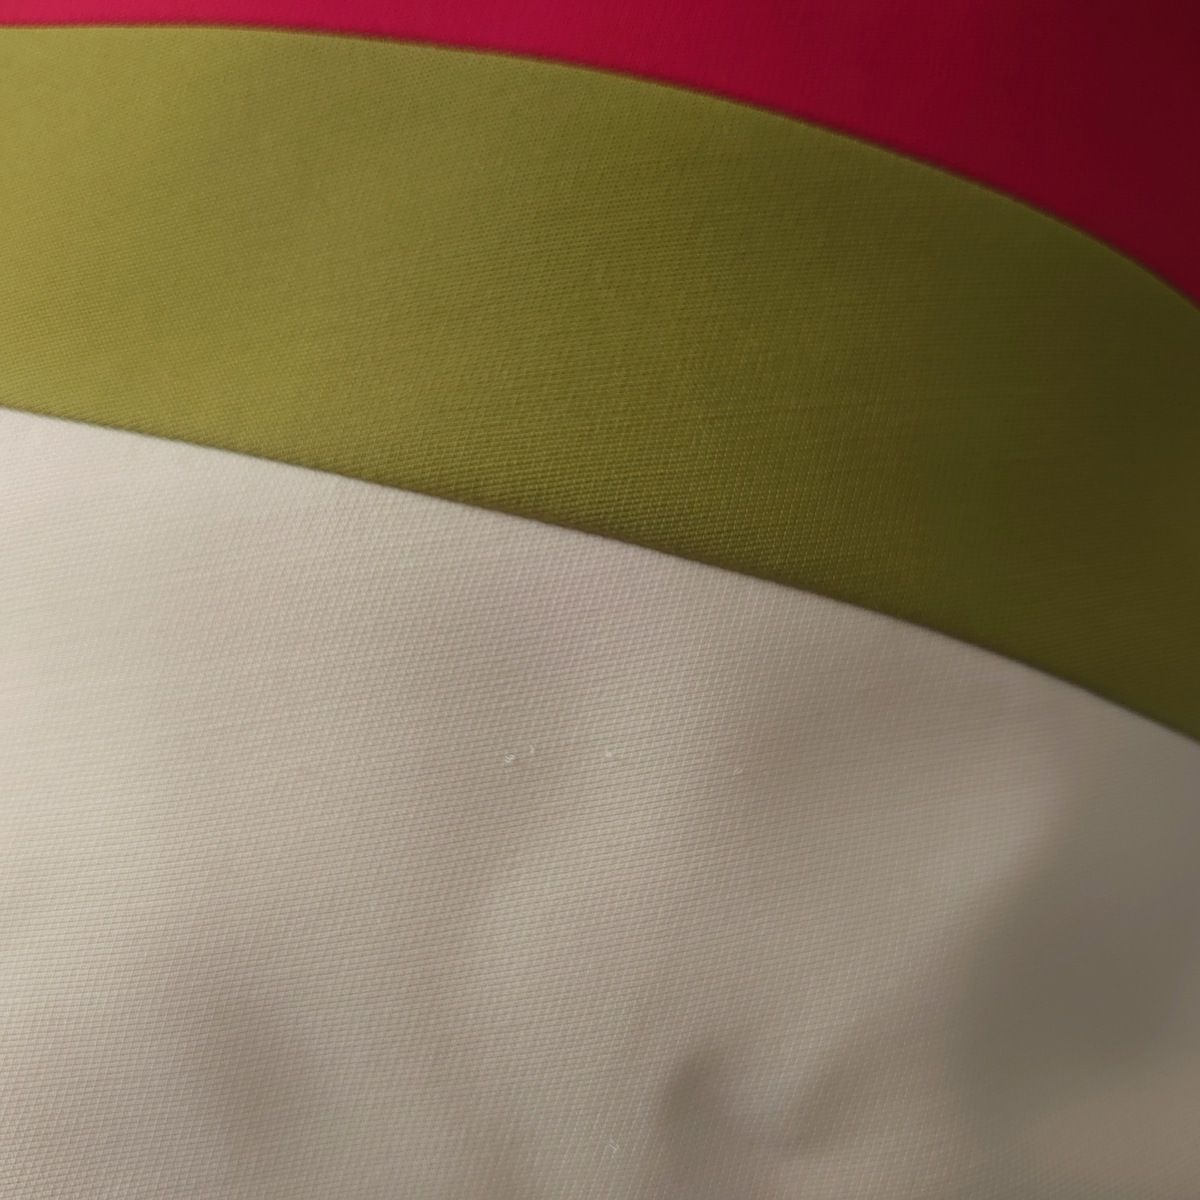 GUCCI(グッチ) ロングスカート サイズ40 M レディース美品 - 白×イエローグリーン×レッド ウール、シルク - メルカリ